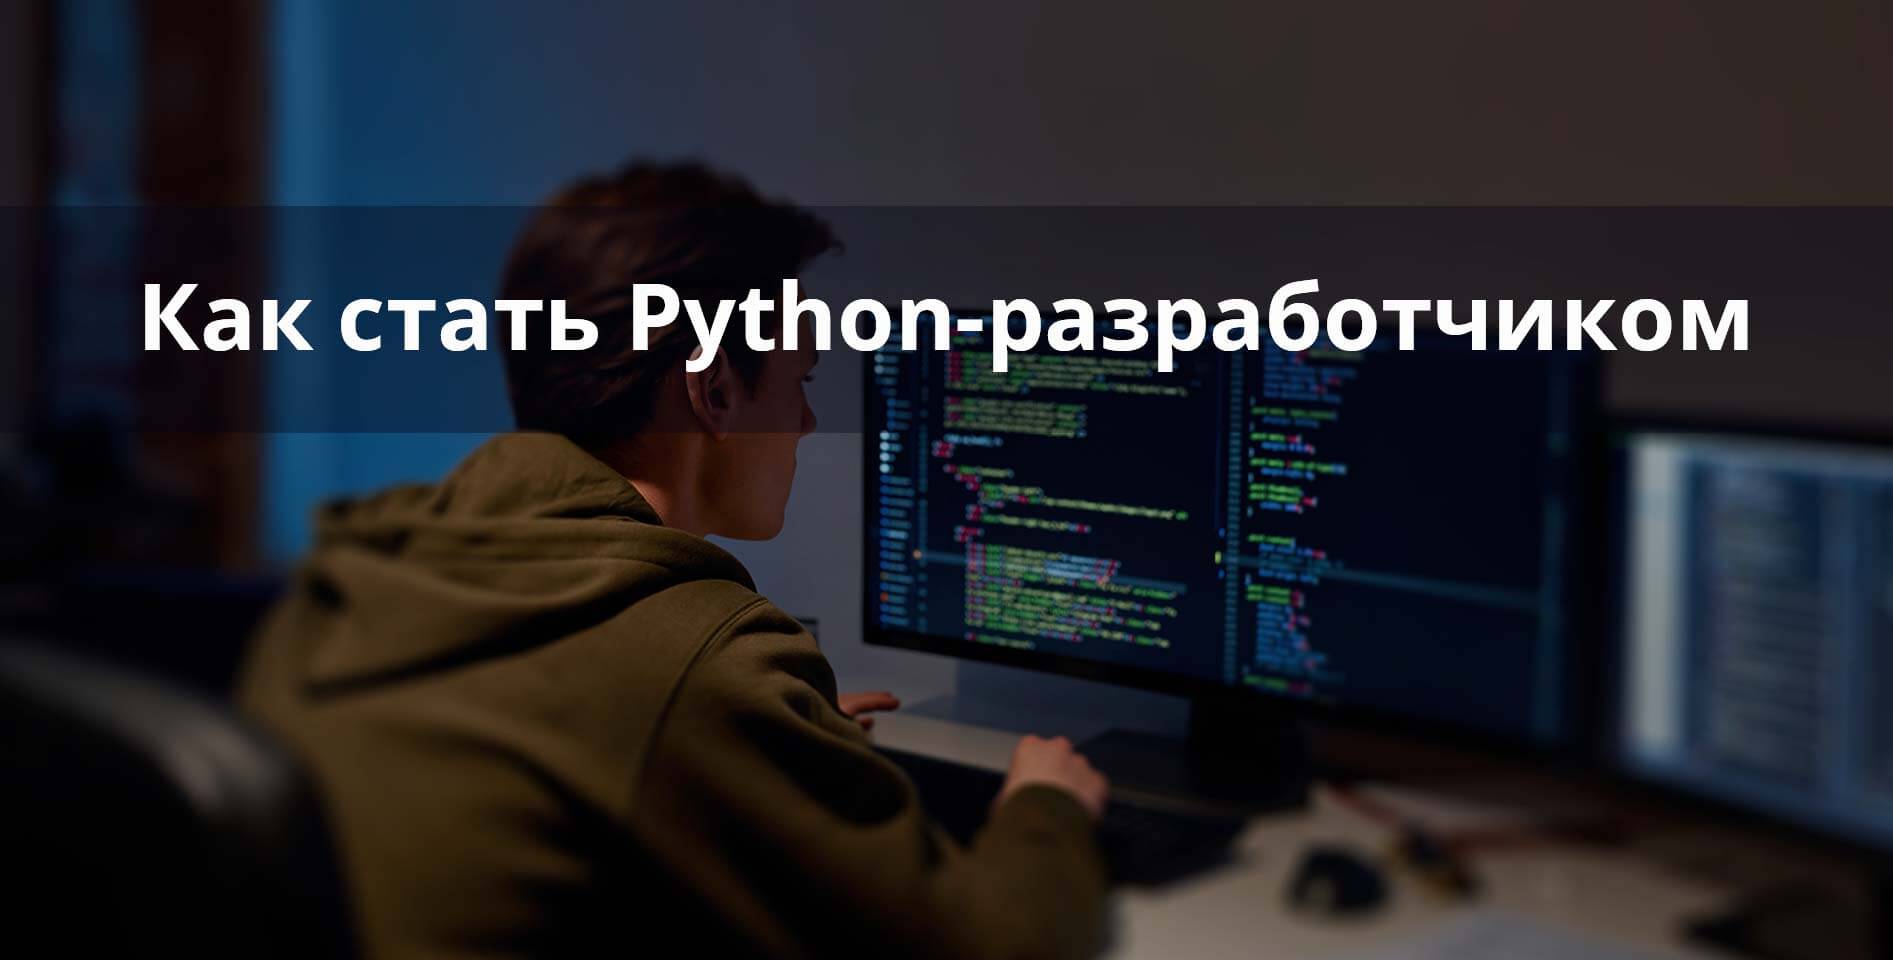 Яндекс.Практикум — Как стать Python-разработчиком